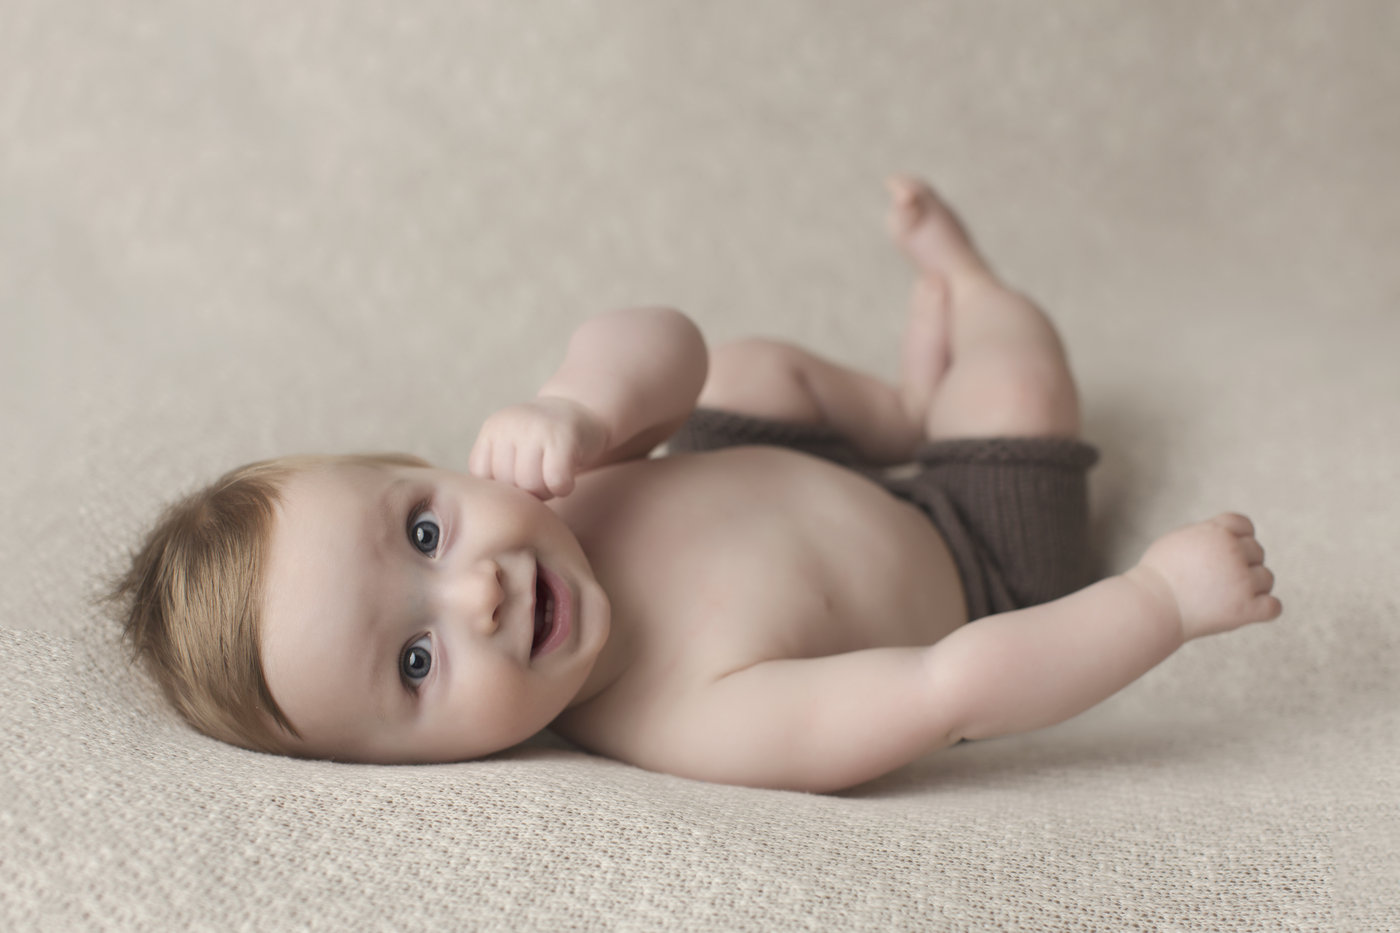 baby milestone photography cleveland